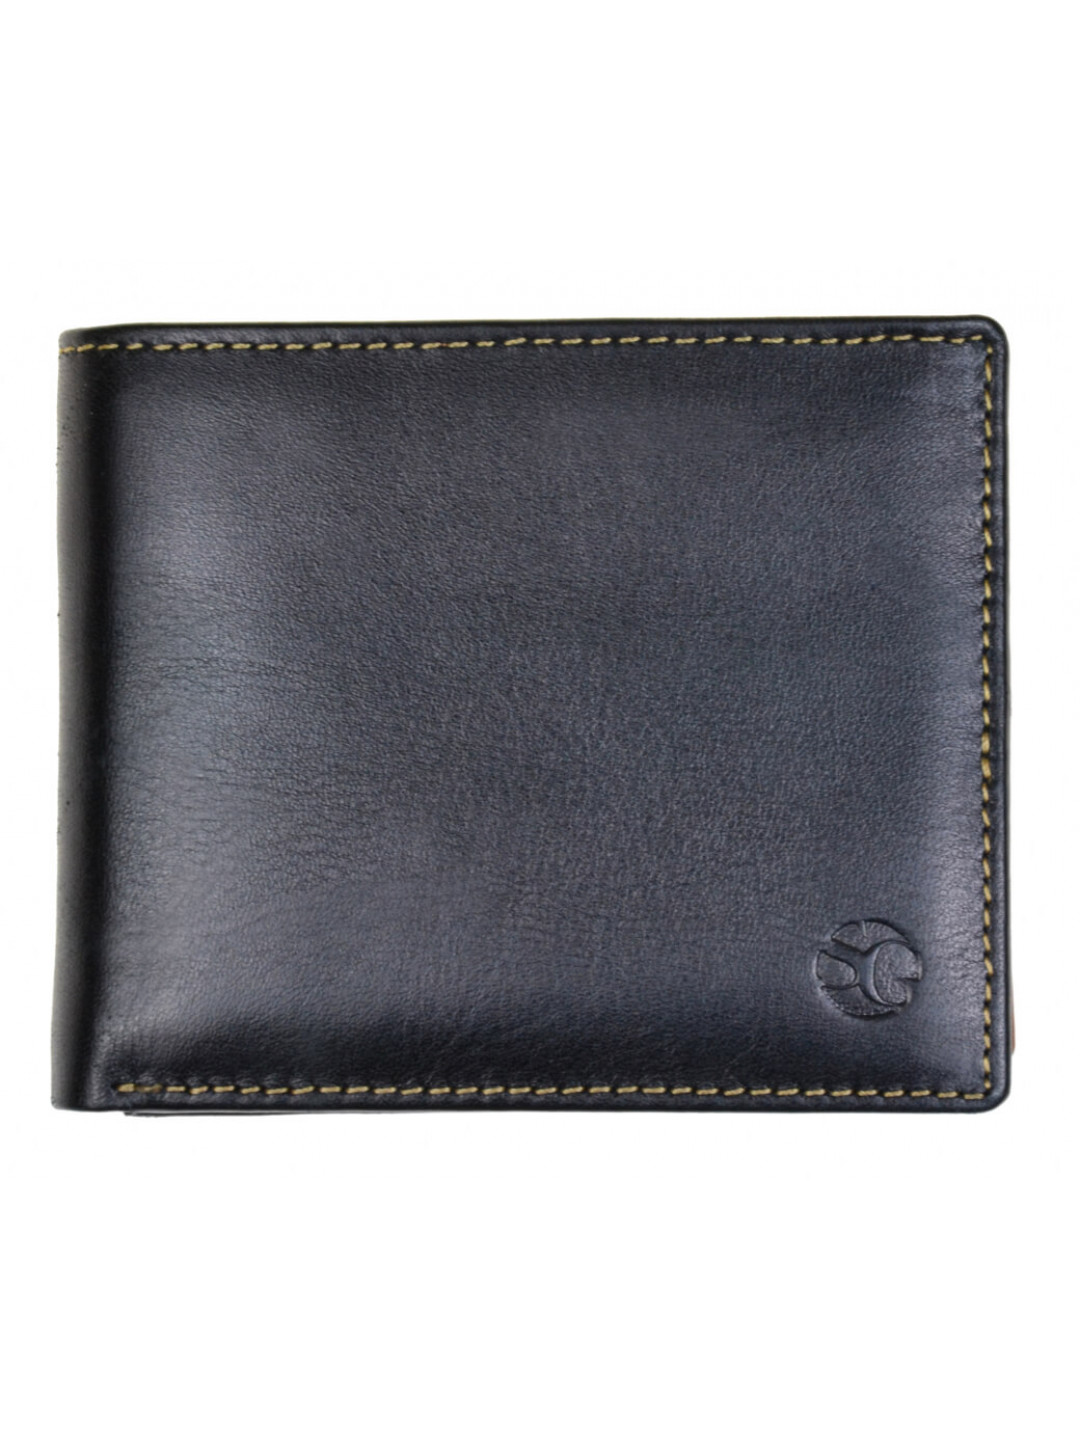 SEGALI Pánská kožená peněženka 7110 black cognac